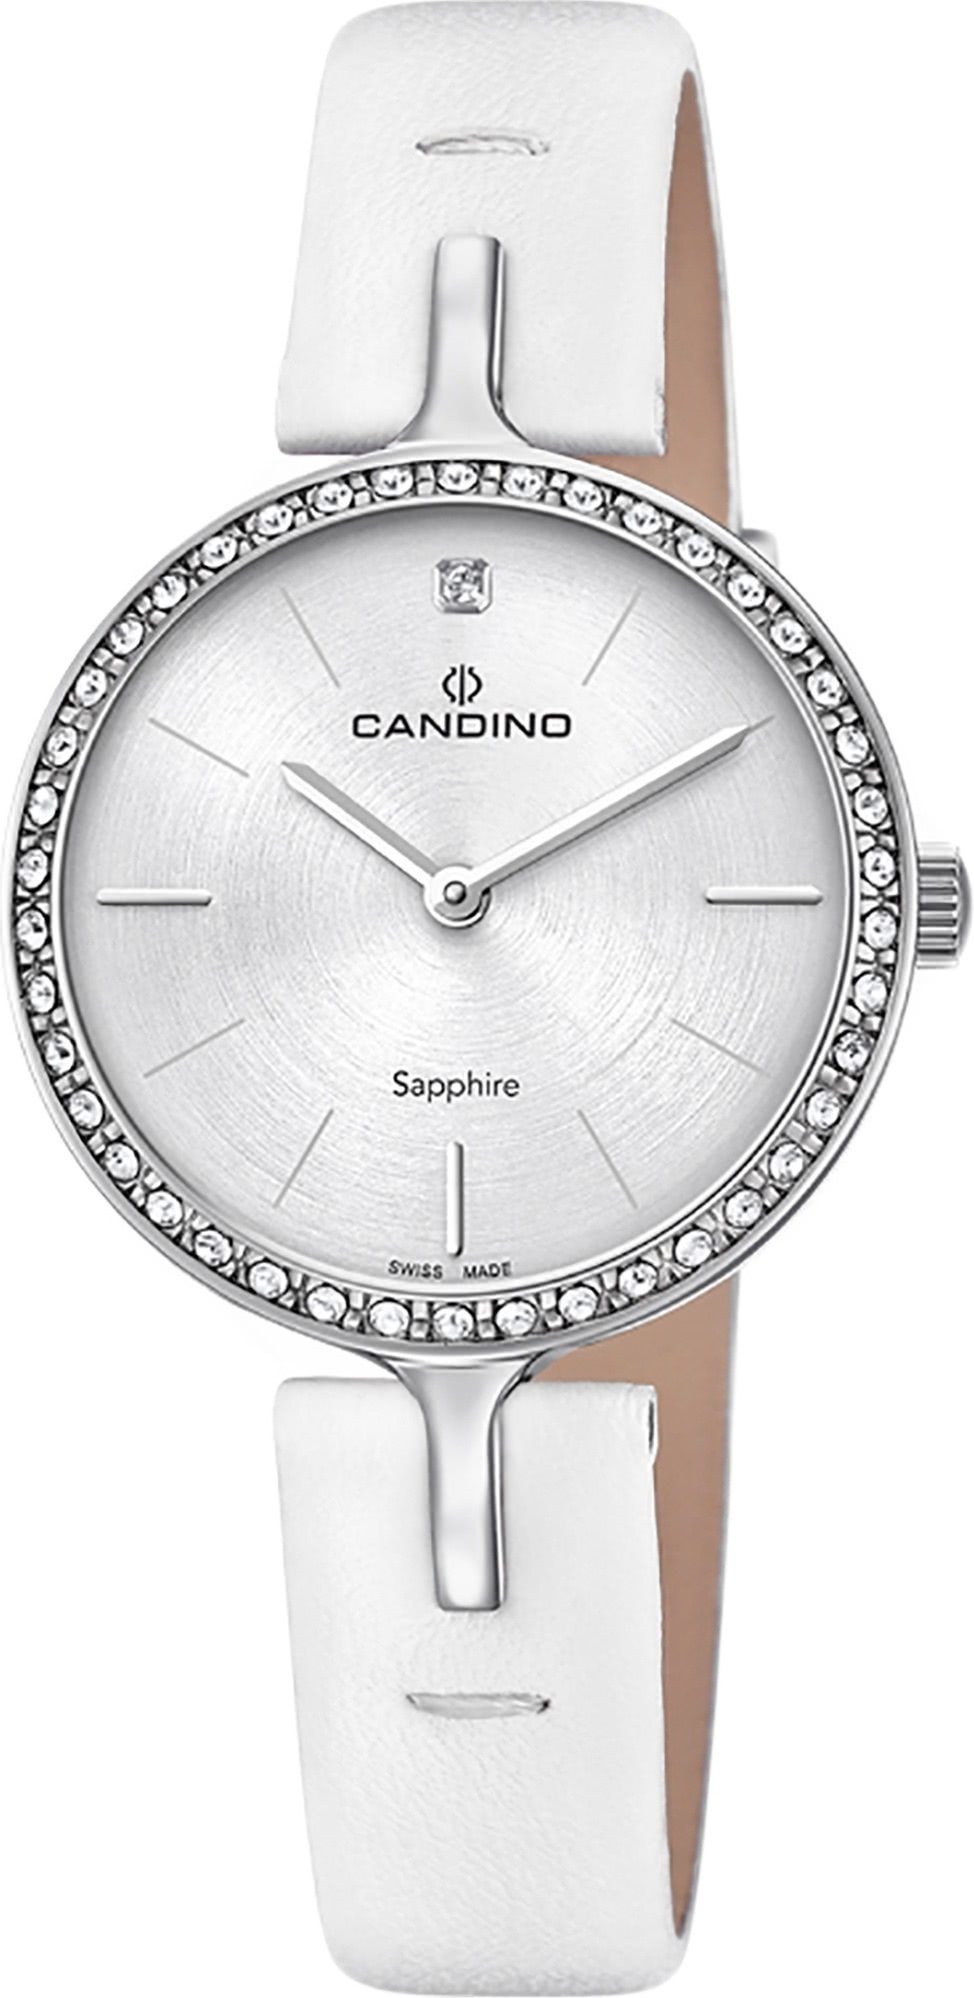 Candino Damen Quarzuhr Analog Fashion Lederarmband C4651/1, Quarzuhr Candino Armbanduhr rund, weiß, Damen